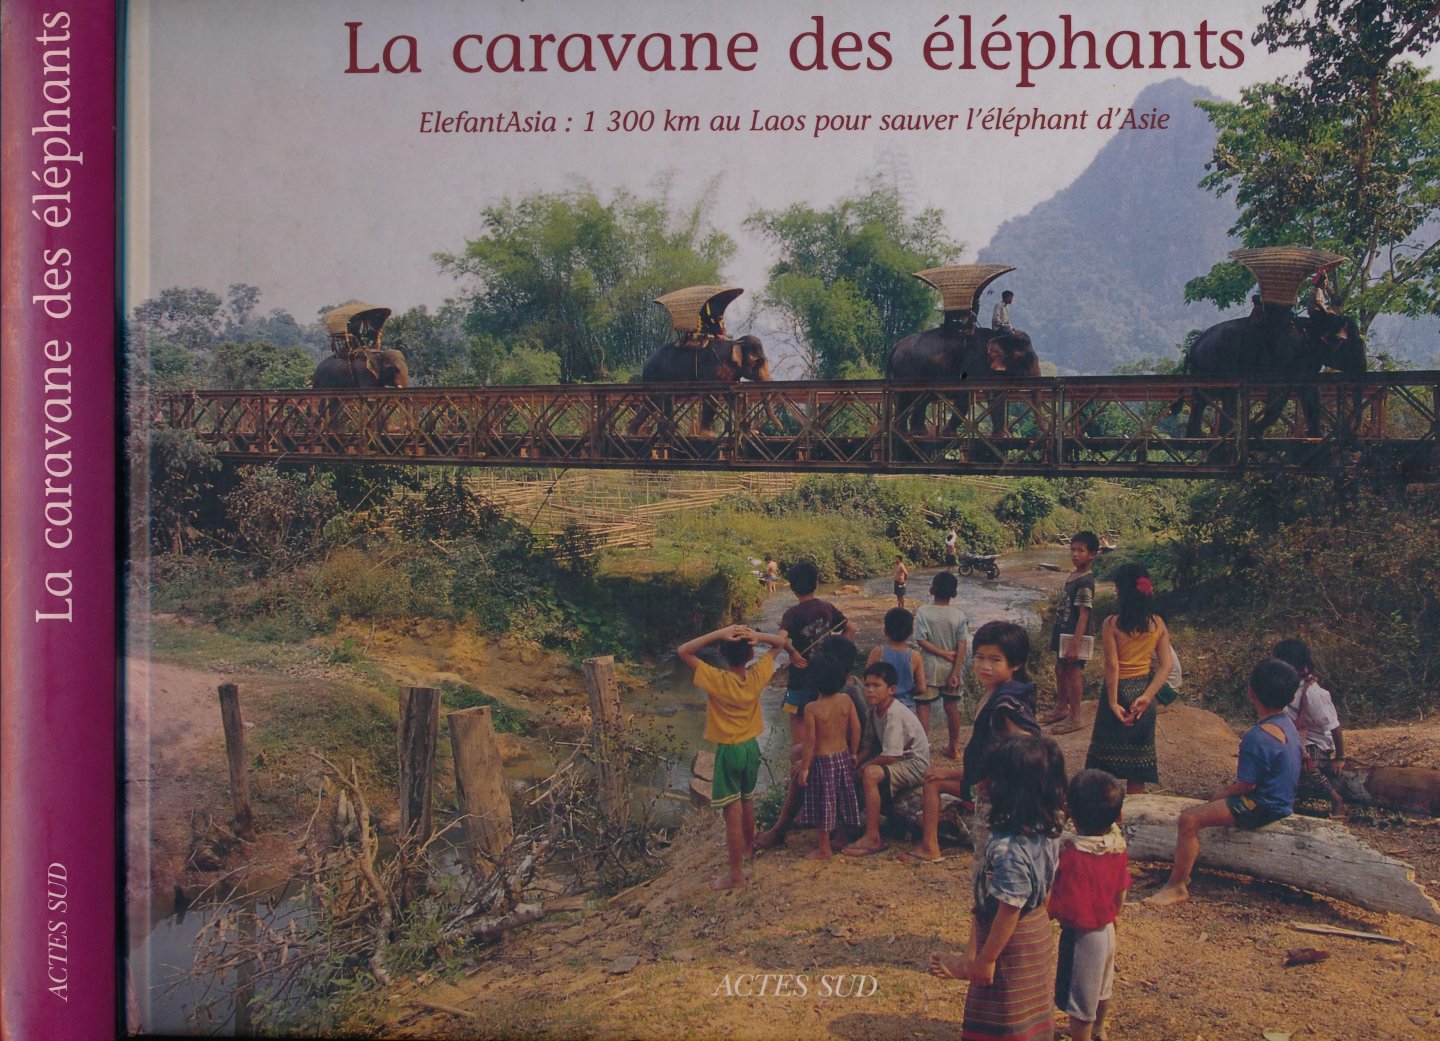 Duffillot, Sébastien, Amphay Doré (textes) et Thierry Renavand (photographies). - La Caravane des éléphants: Elefantasia: 1300 km au Laos pour sauver l'éléphant d'Asie.